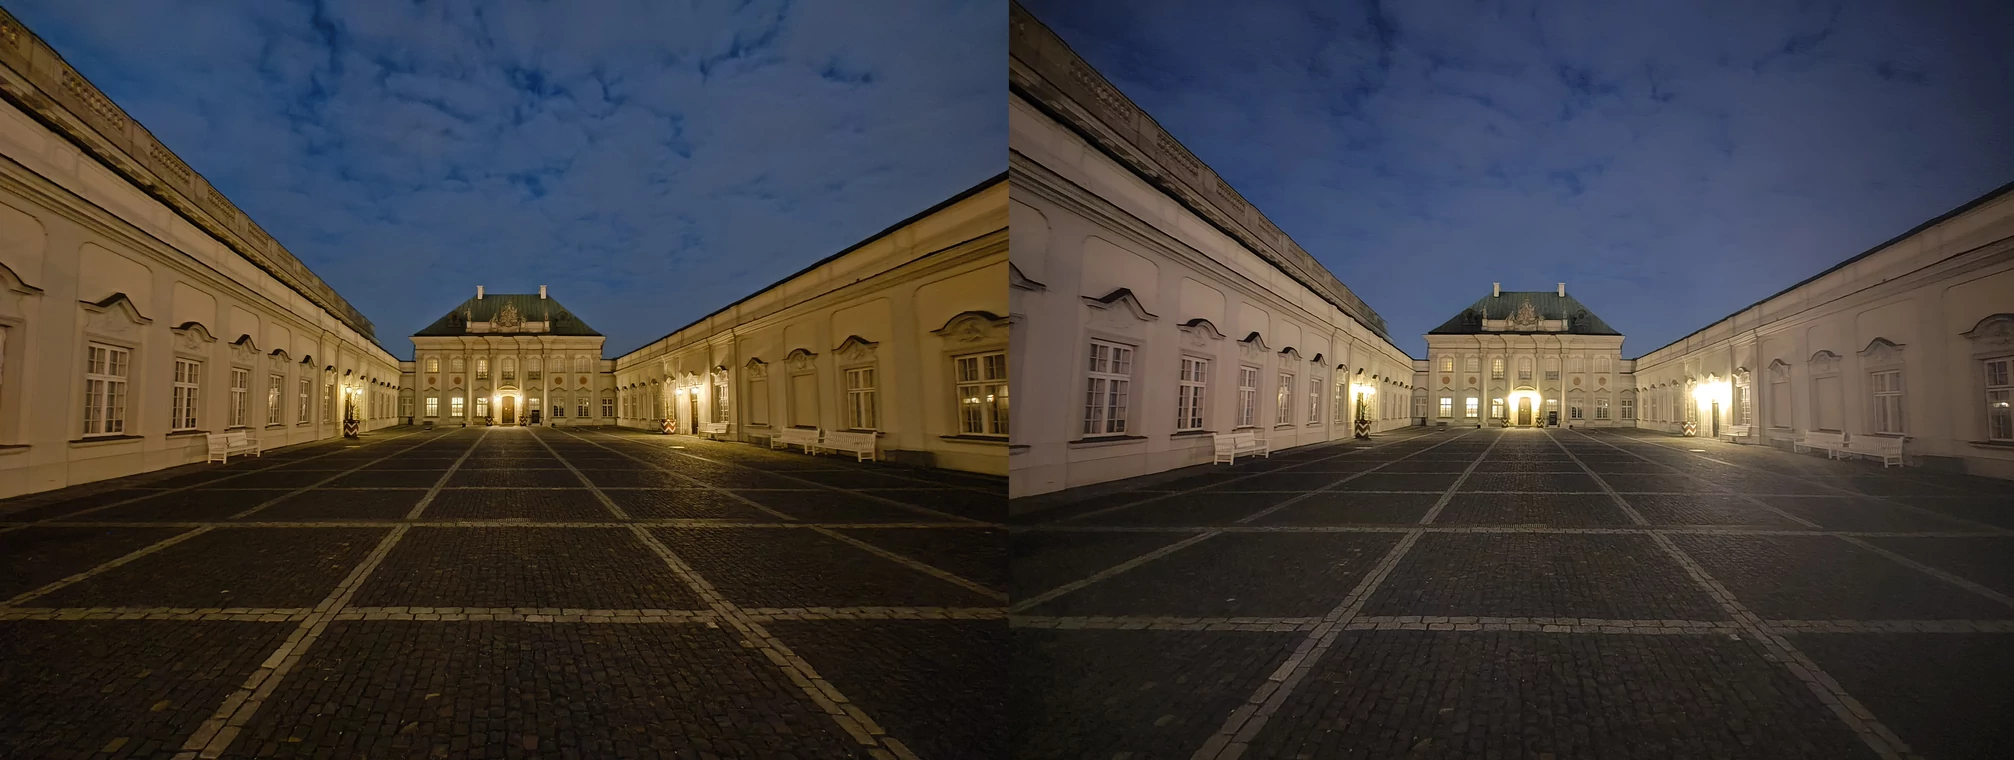 Nocne zdjęcia szerokokątne — po lewej Nothing Phone (2a), po prawej Nothing Phone (1). Kliknij, aby powiększyć)